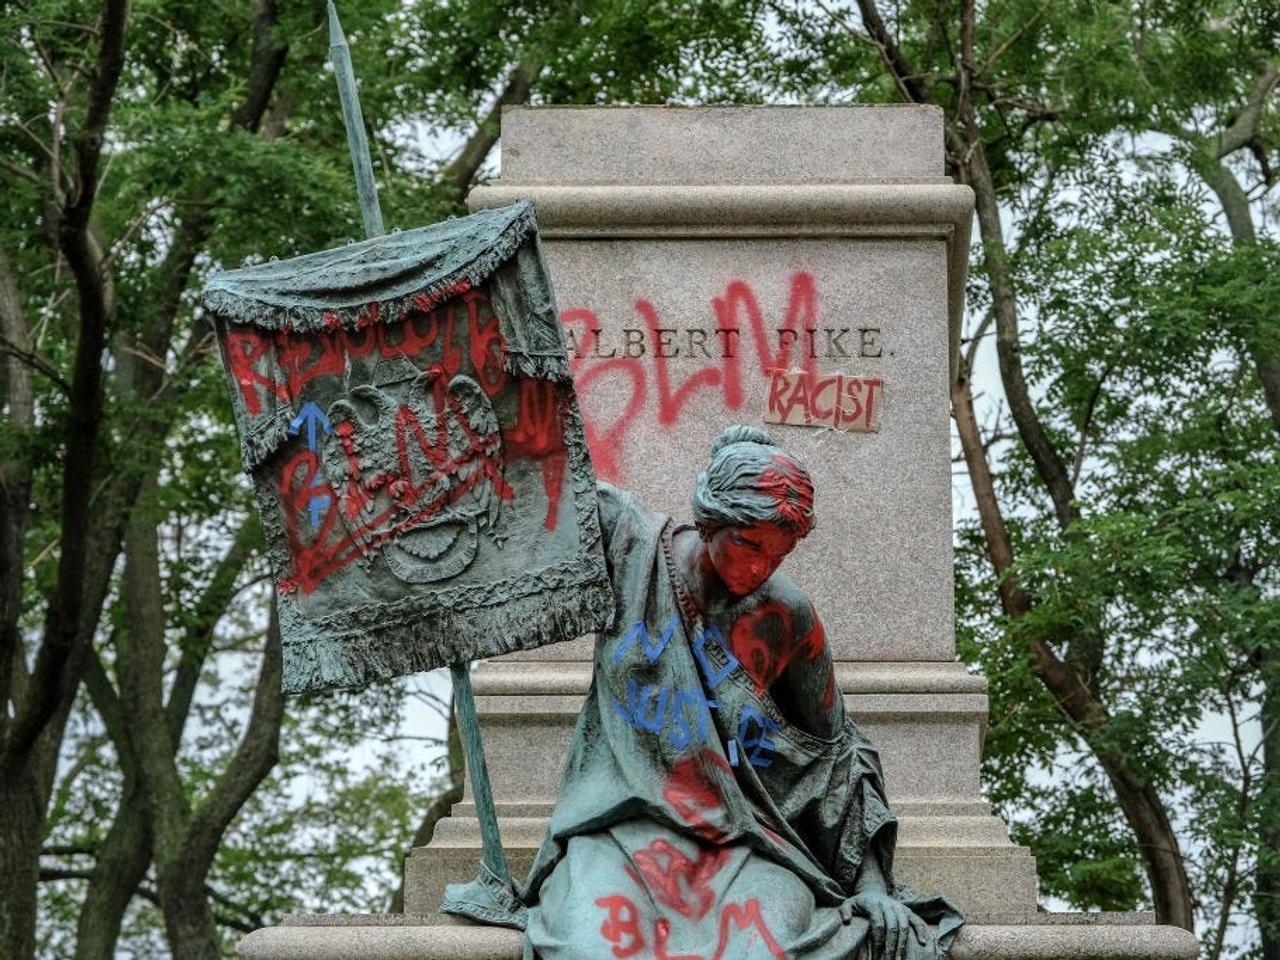 南軍のアルバートパイク将軍の像が抗議者たちによって倒された後の台座。2020年6月20日、ワシントンD.C.で。